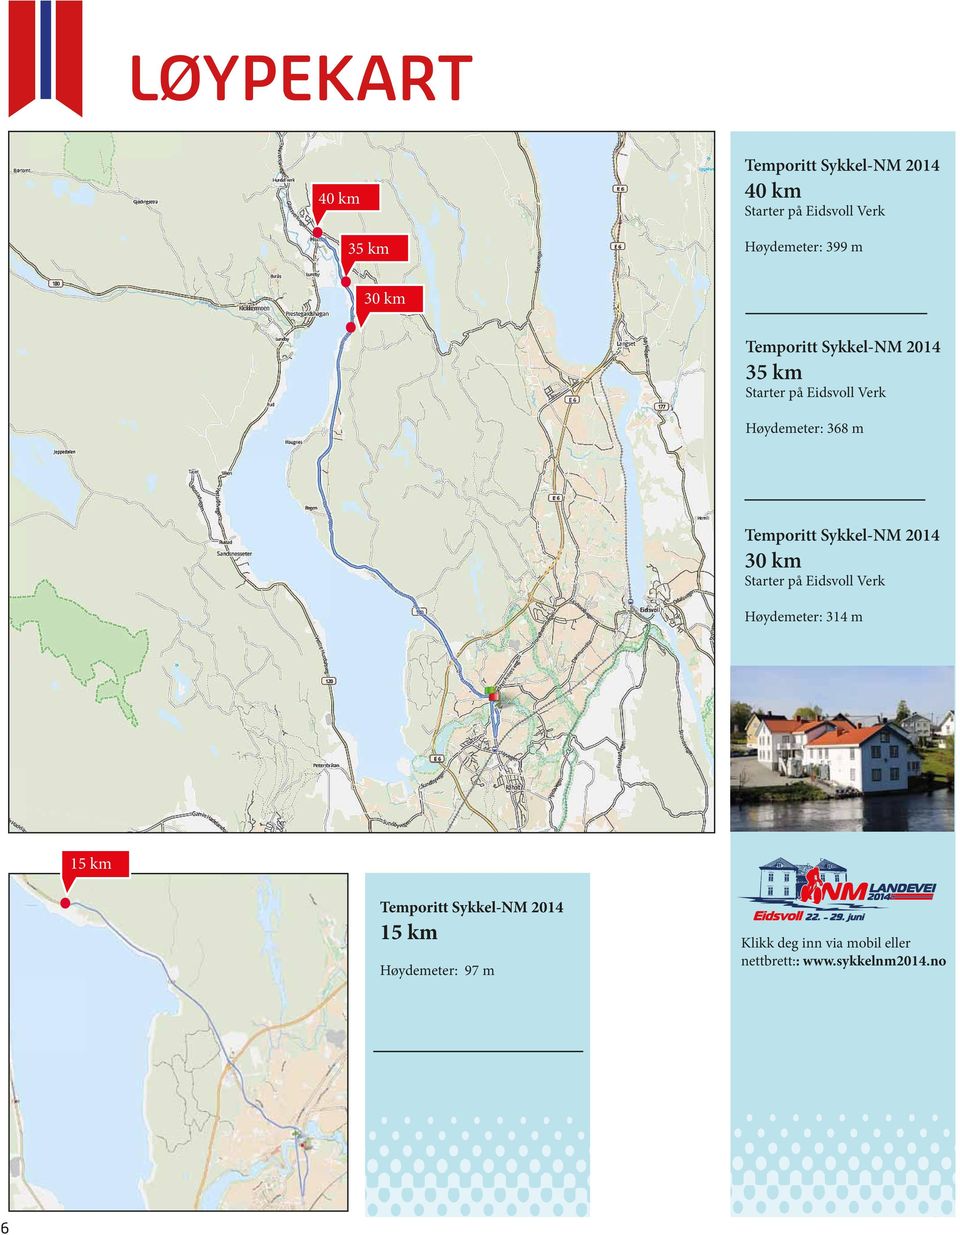 Temporitt Sykkel-NM 2014 30 km Starter på Eidsvoll Verk Høydemeter: 314 m 15 km Temporitt